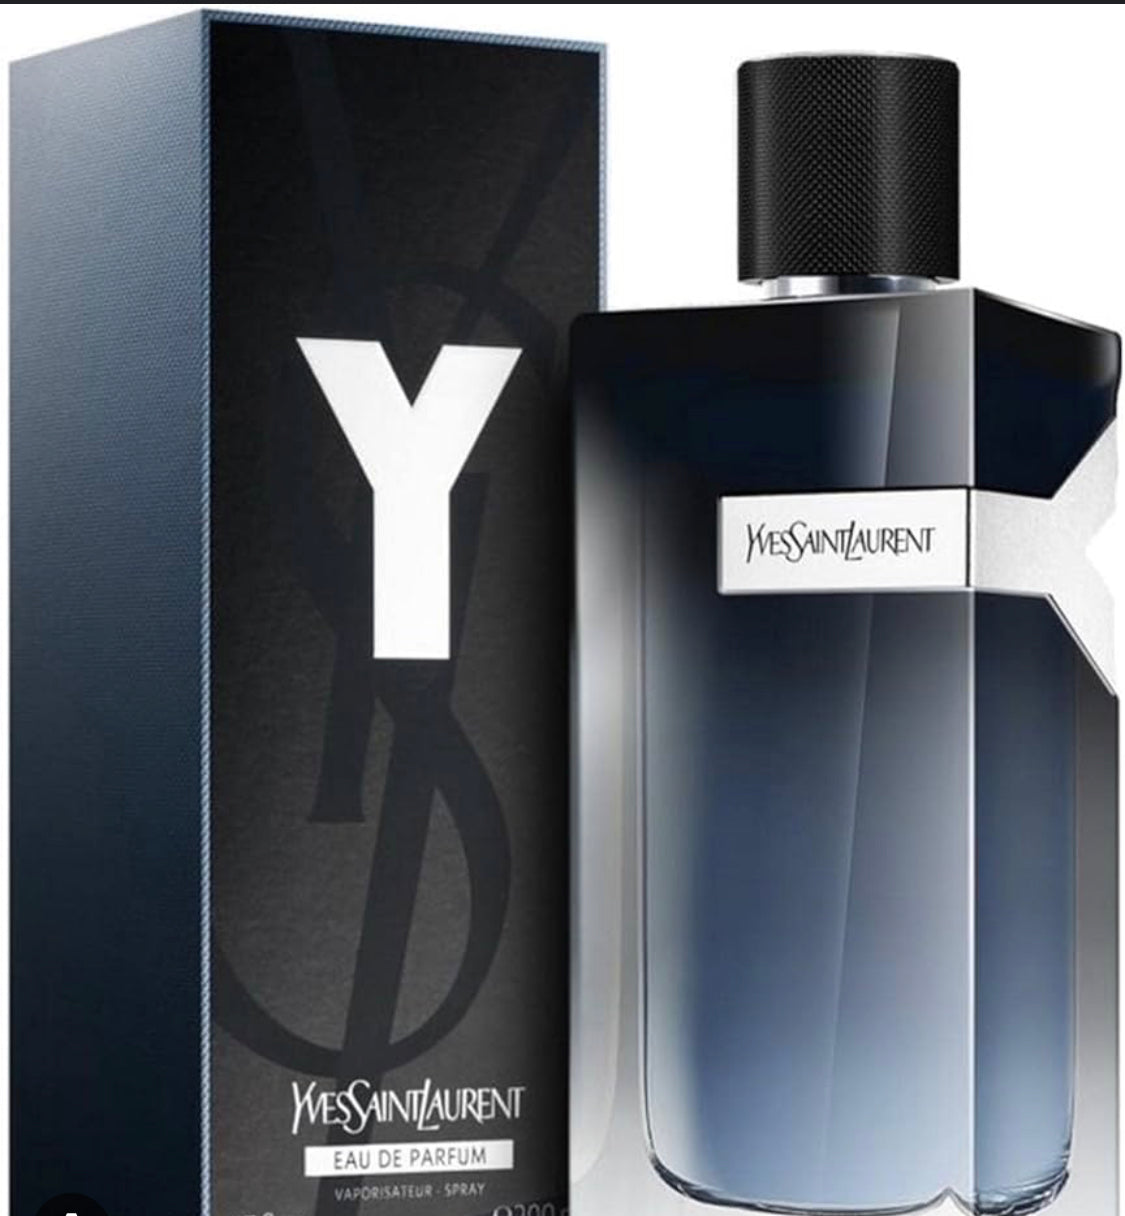 Ysl Y Eau de parfum sample